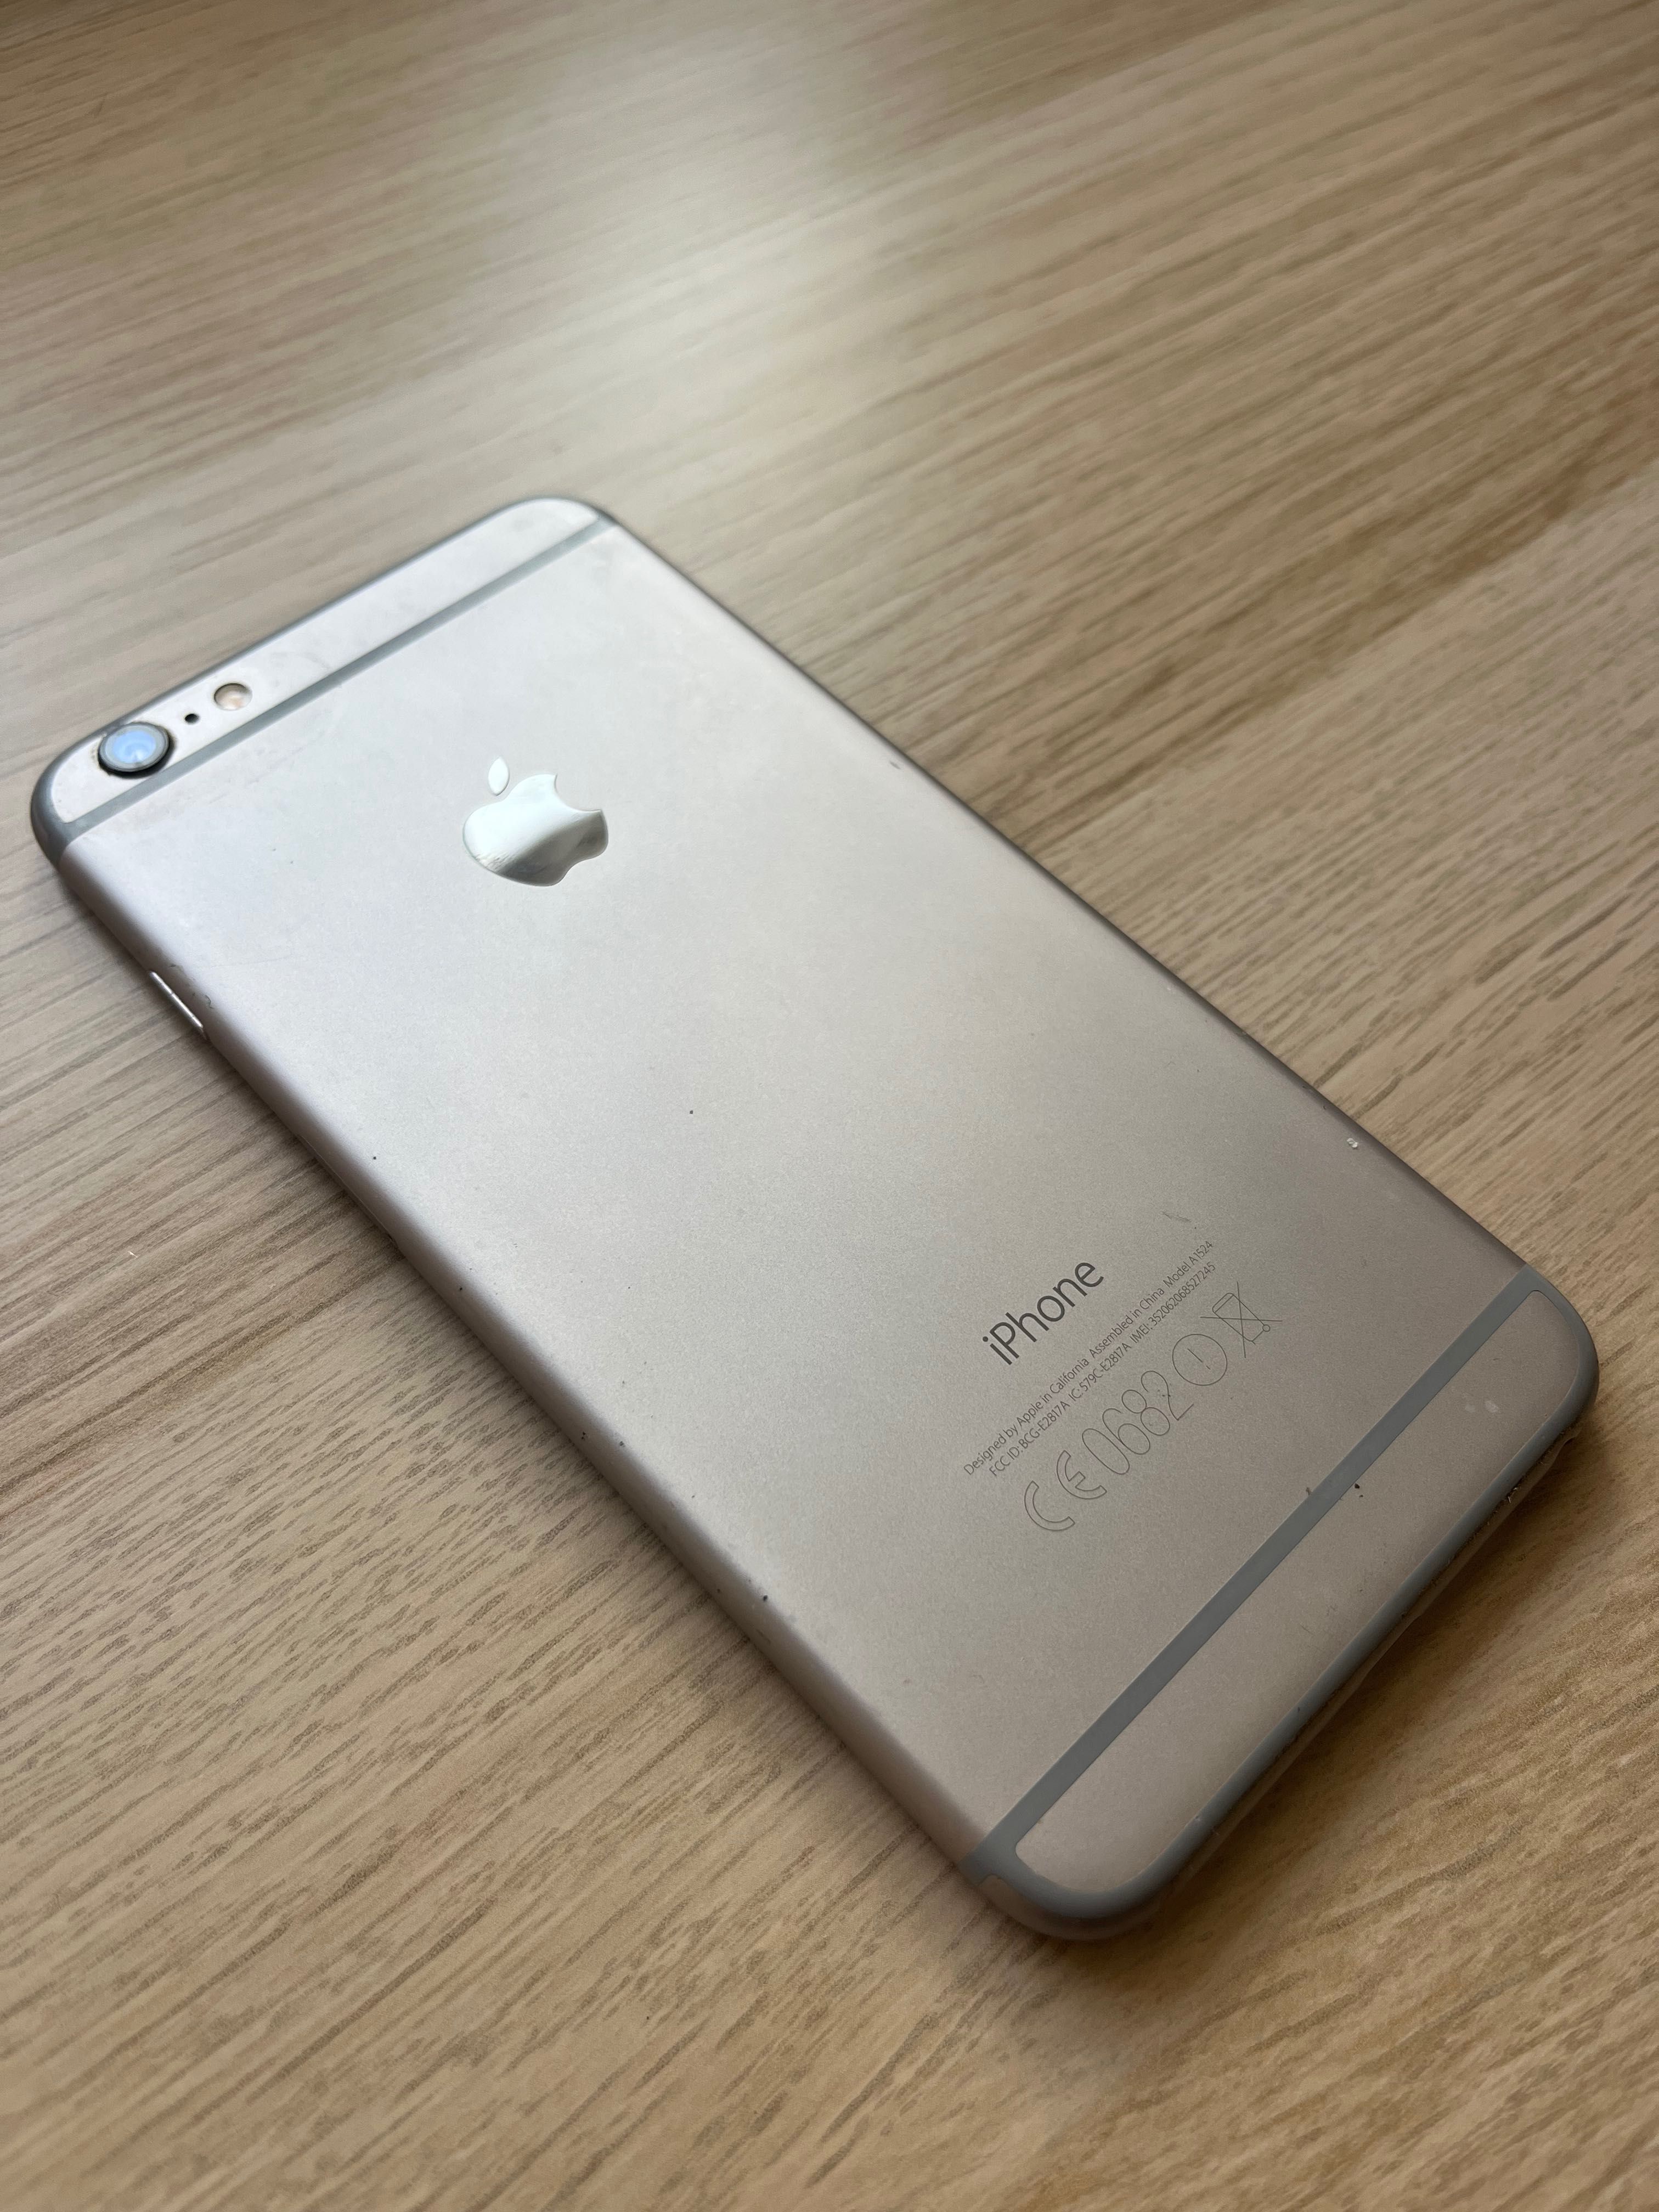 iPhone 6 Plus cinza